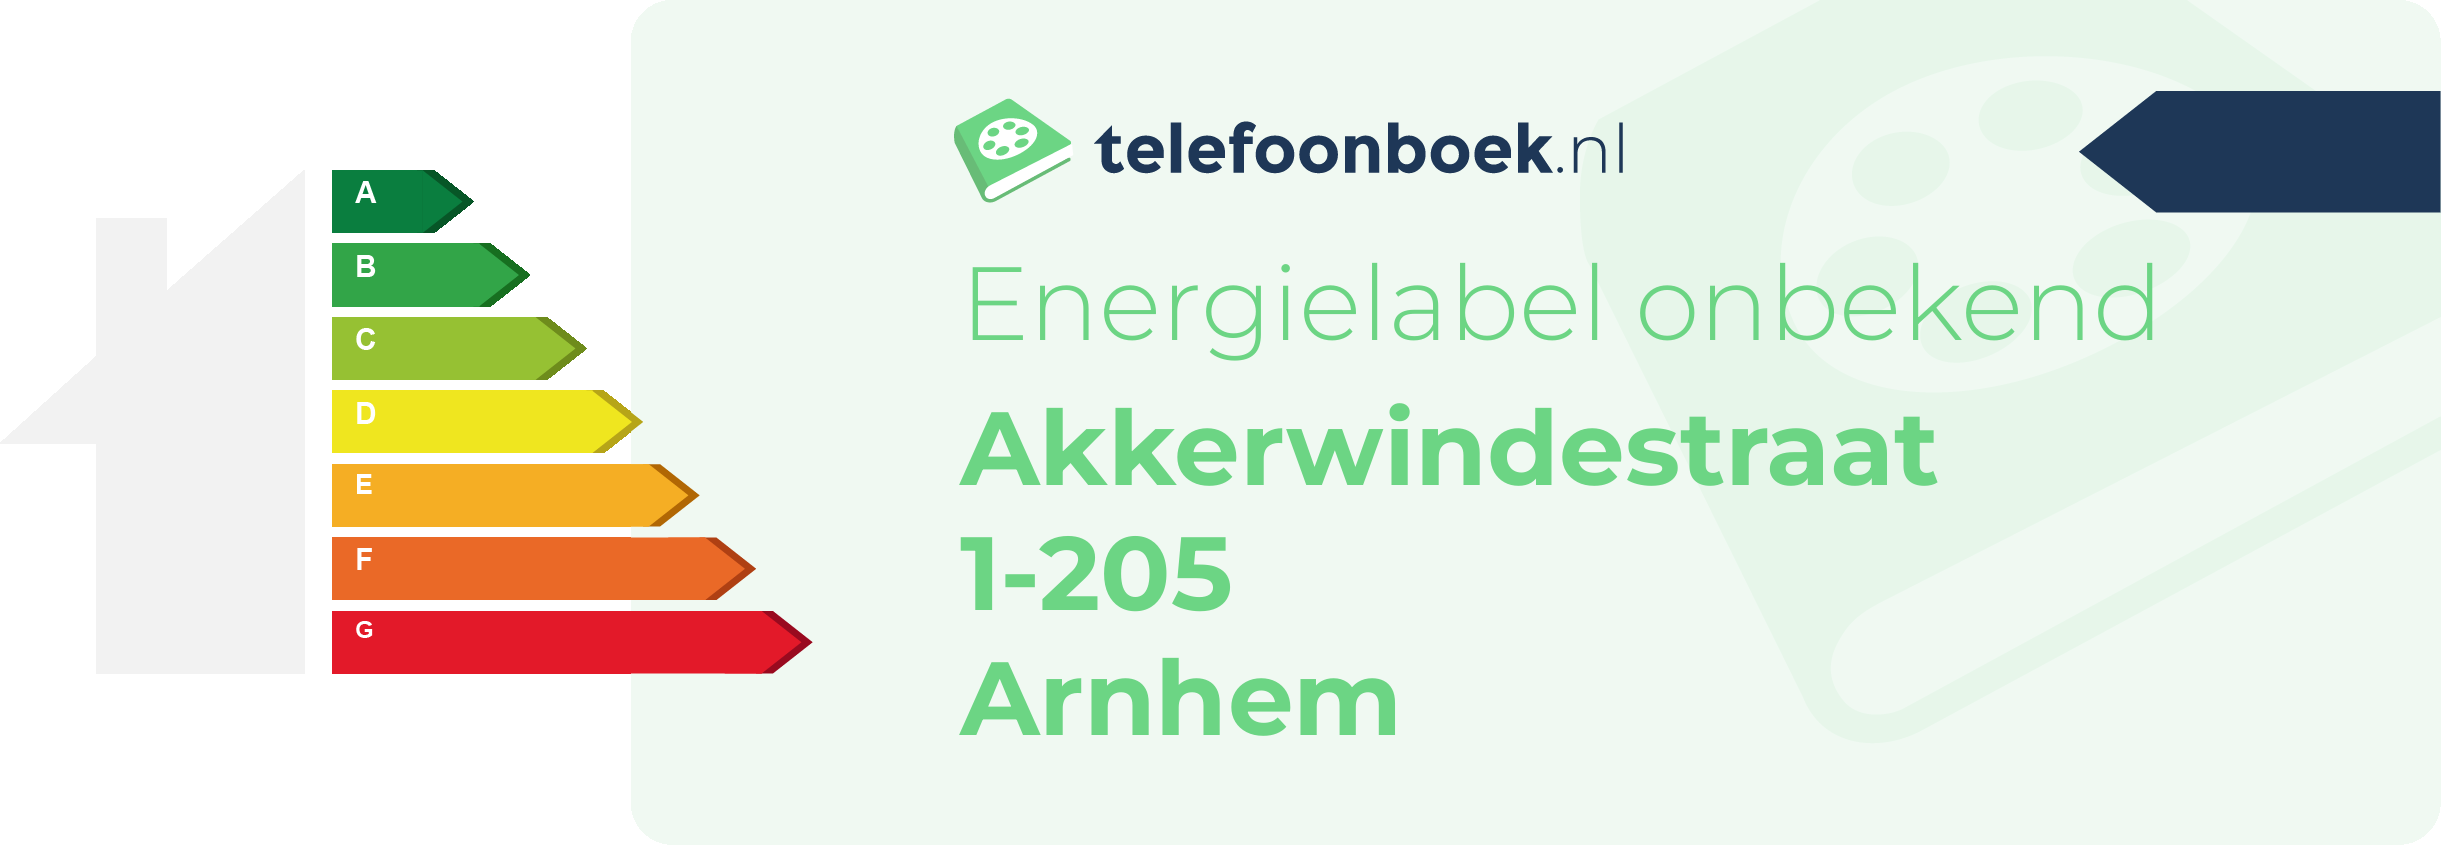 Energielabel Akkerwindestraat 1-205 Arnhem